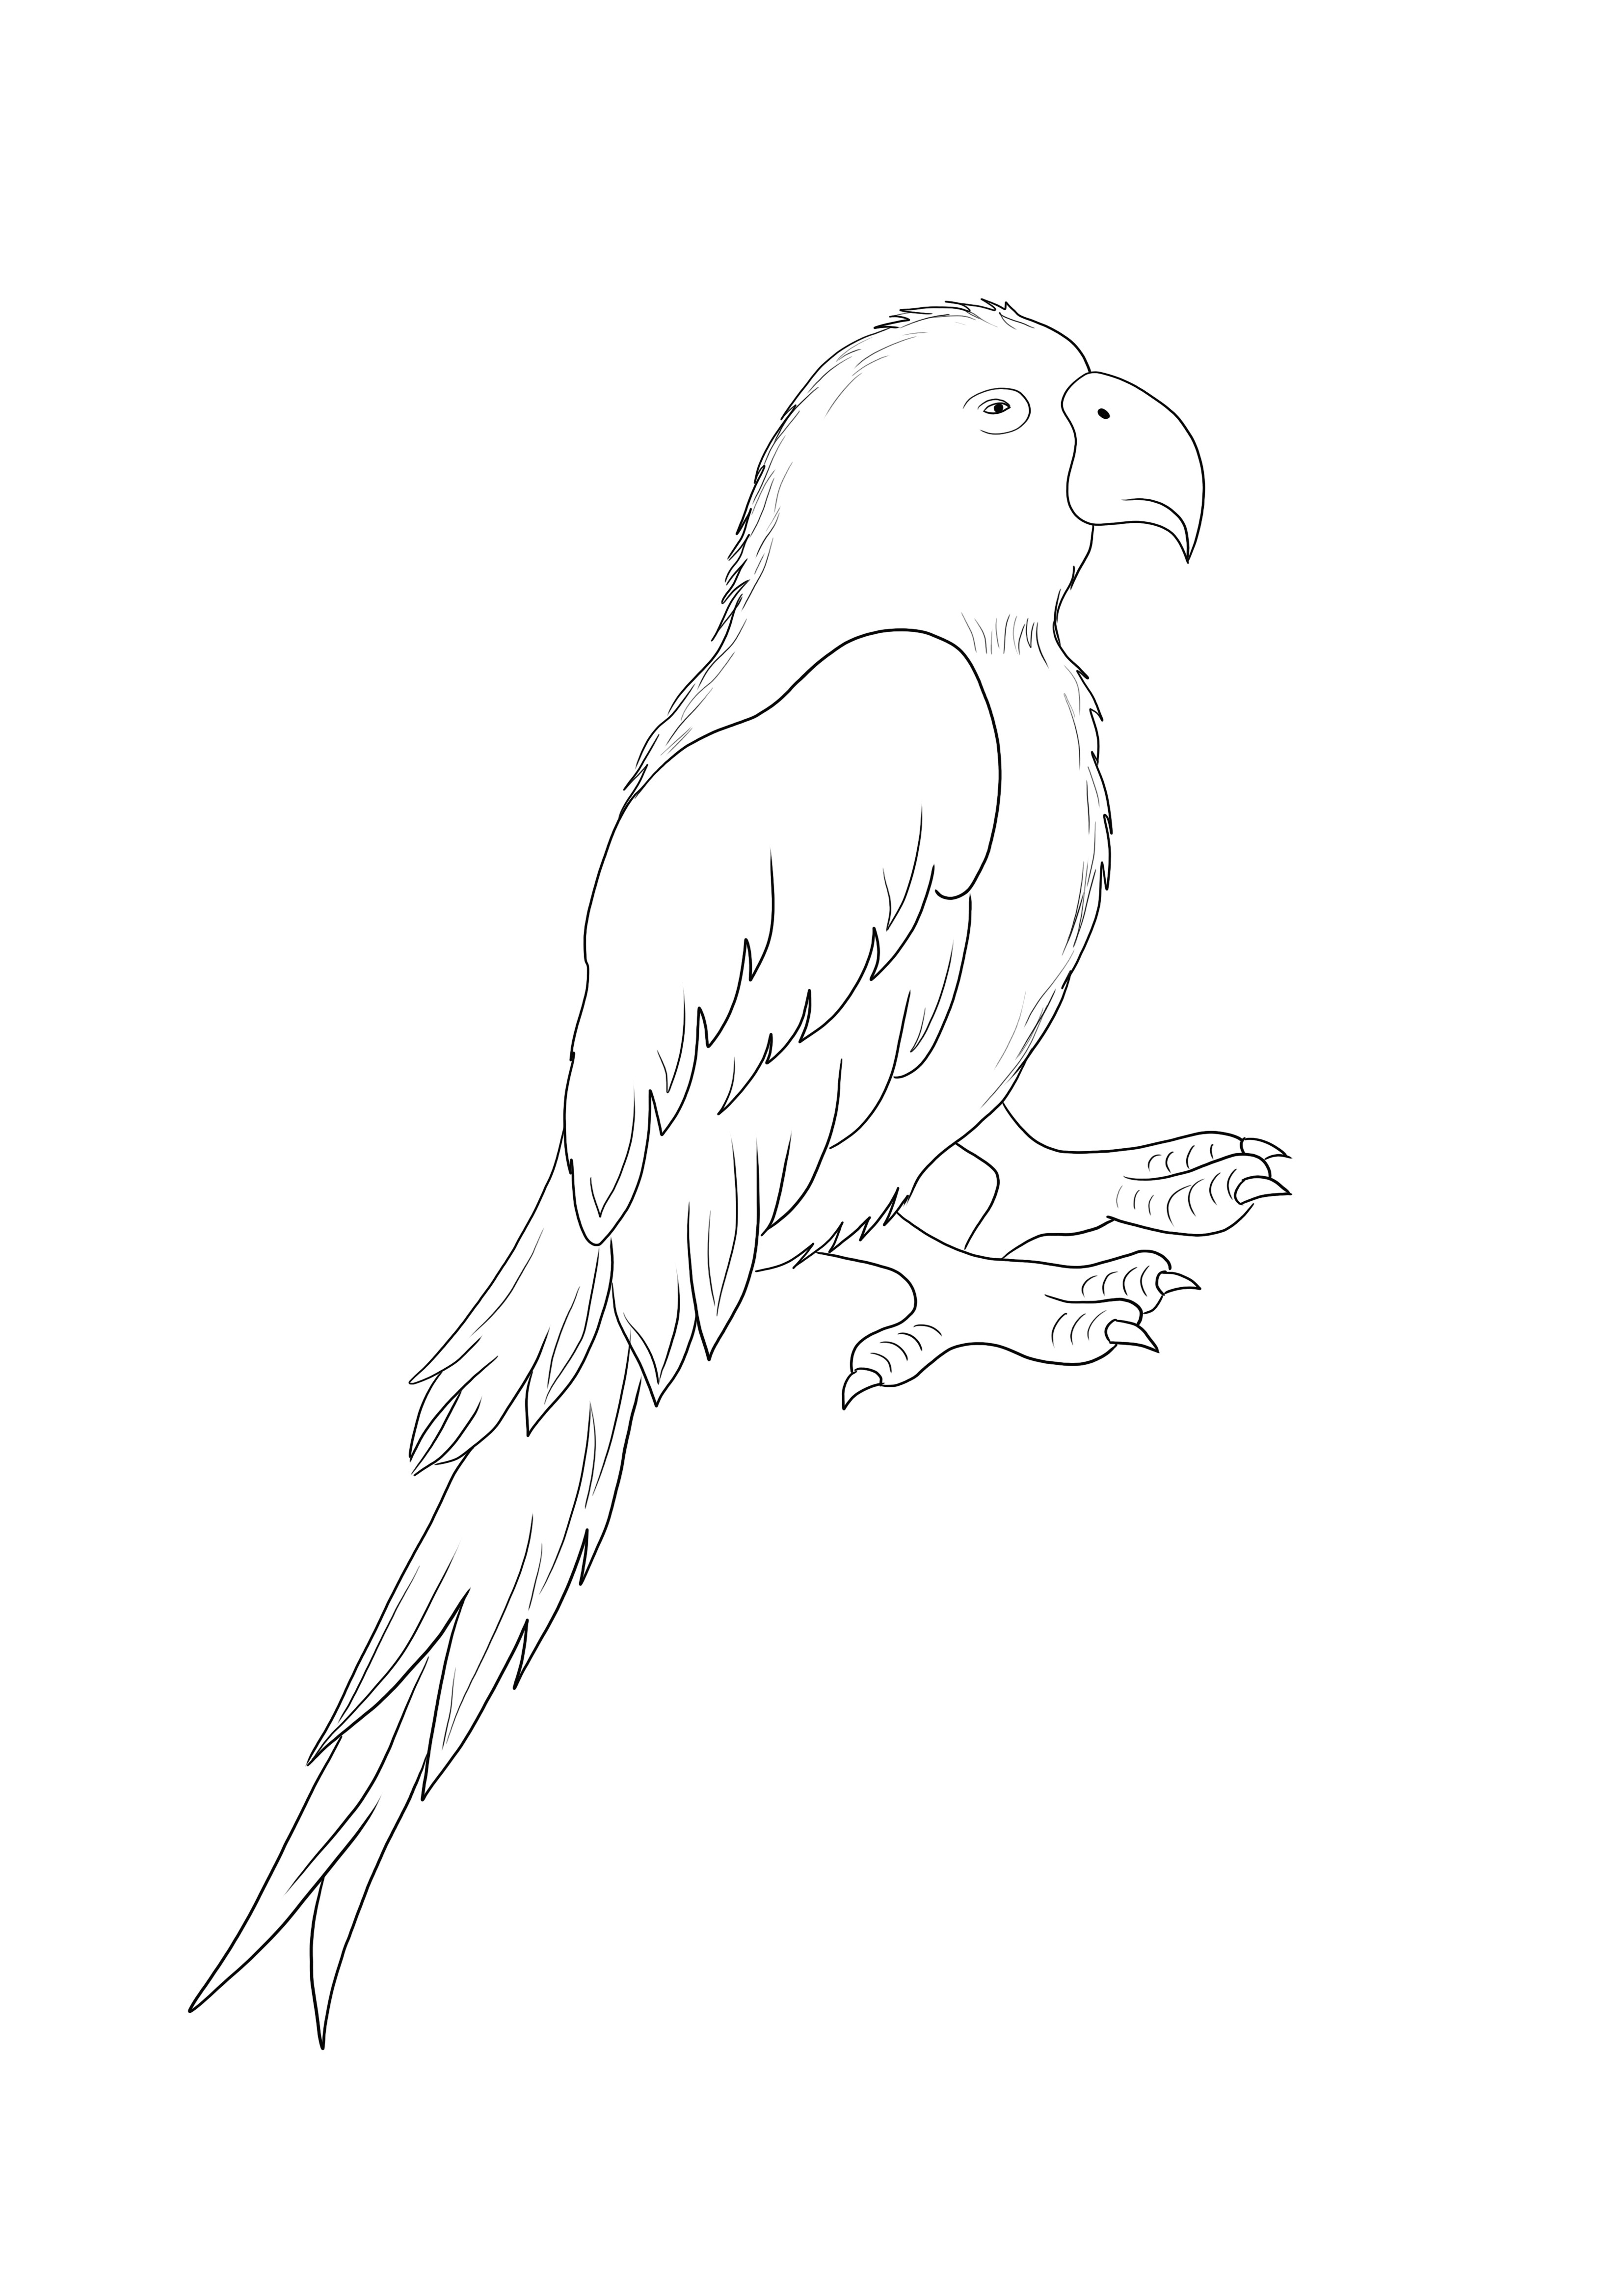 Parrot Bird este gratuit să imprime și să coloreze pur și simplu pentru copiii de toate vârstele